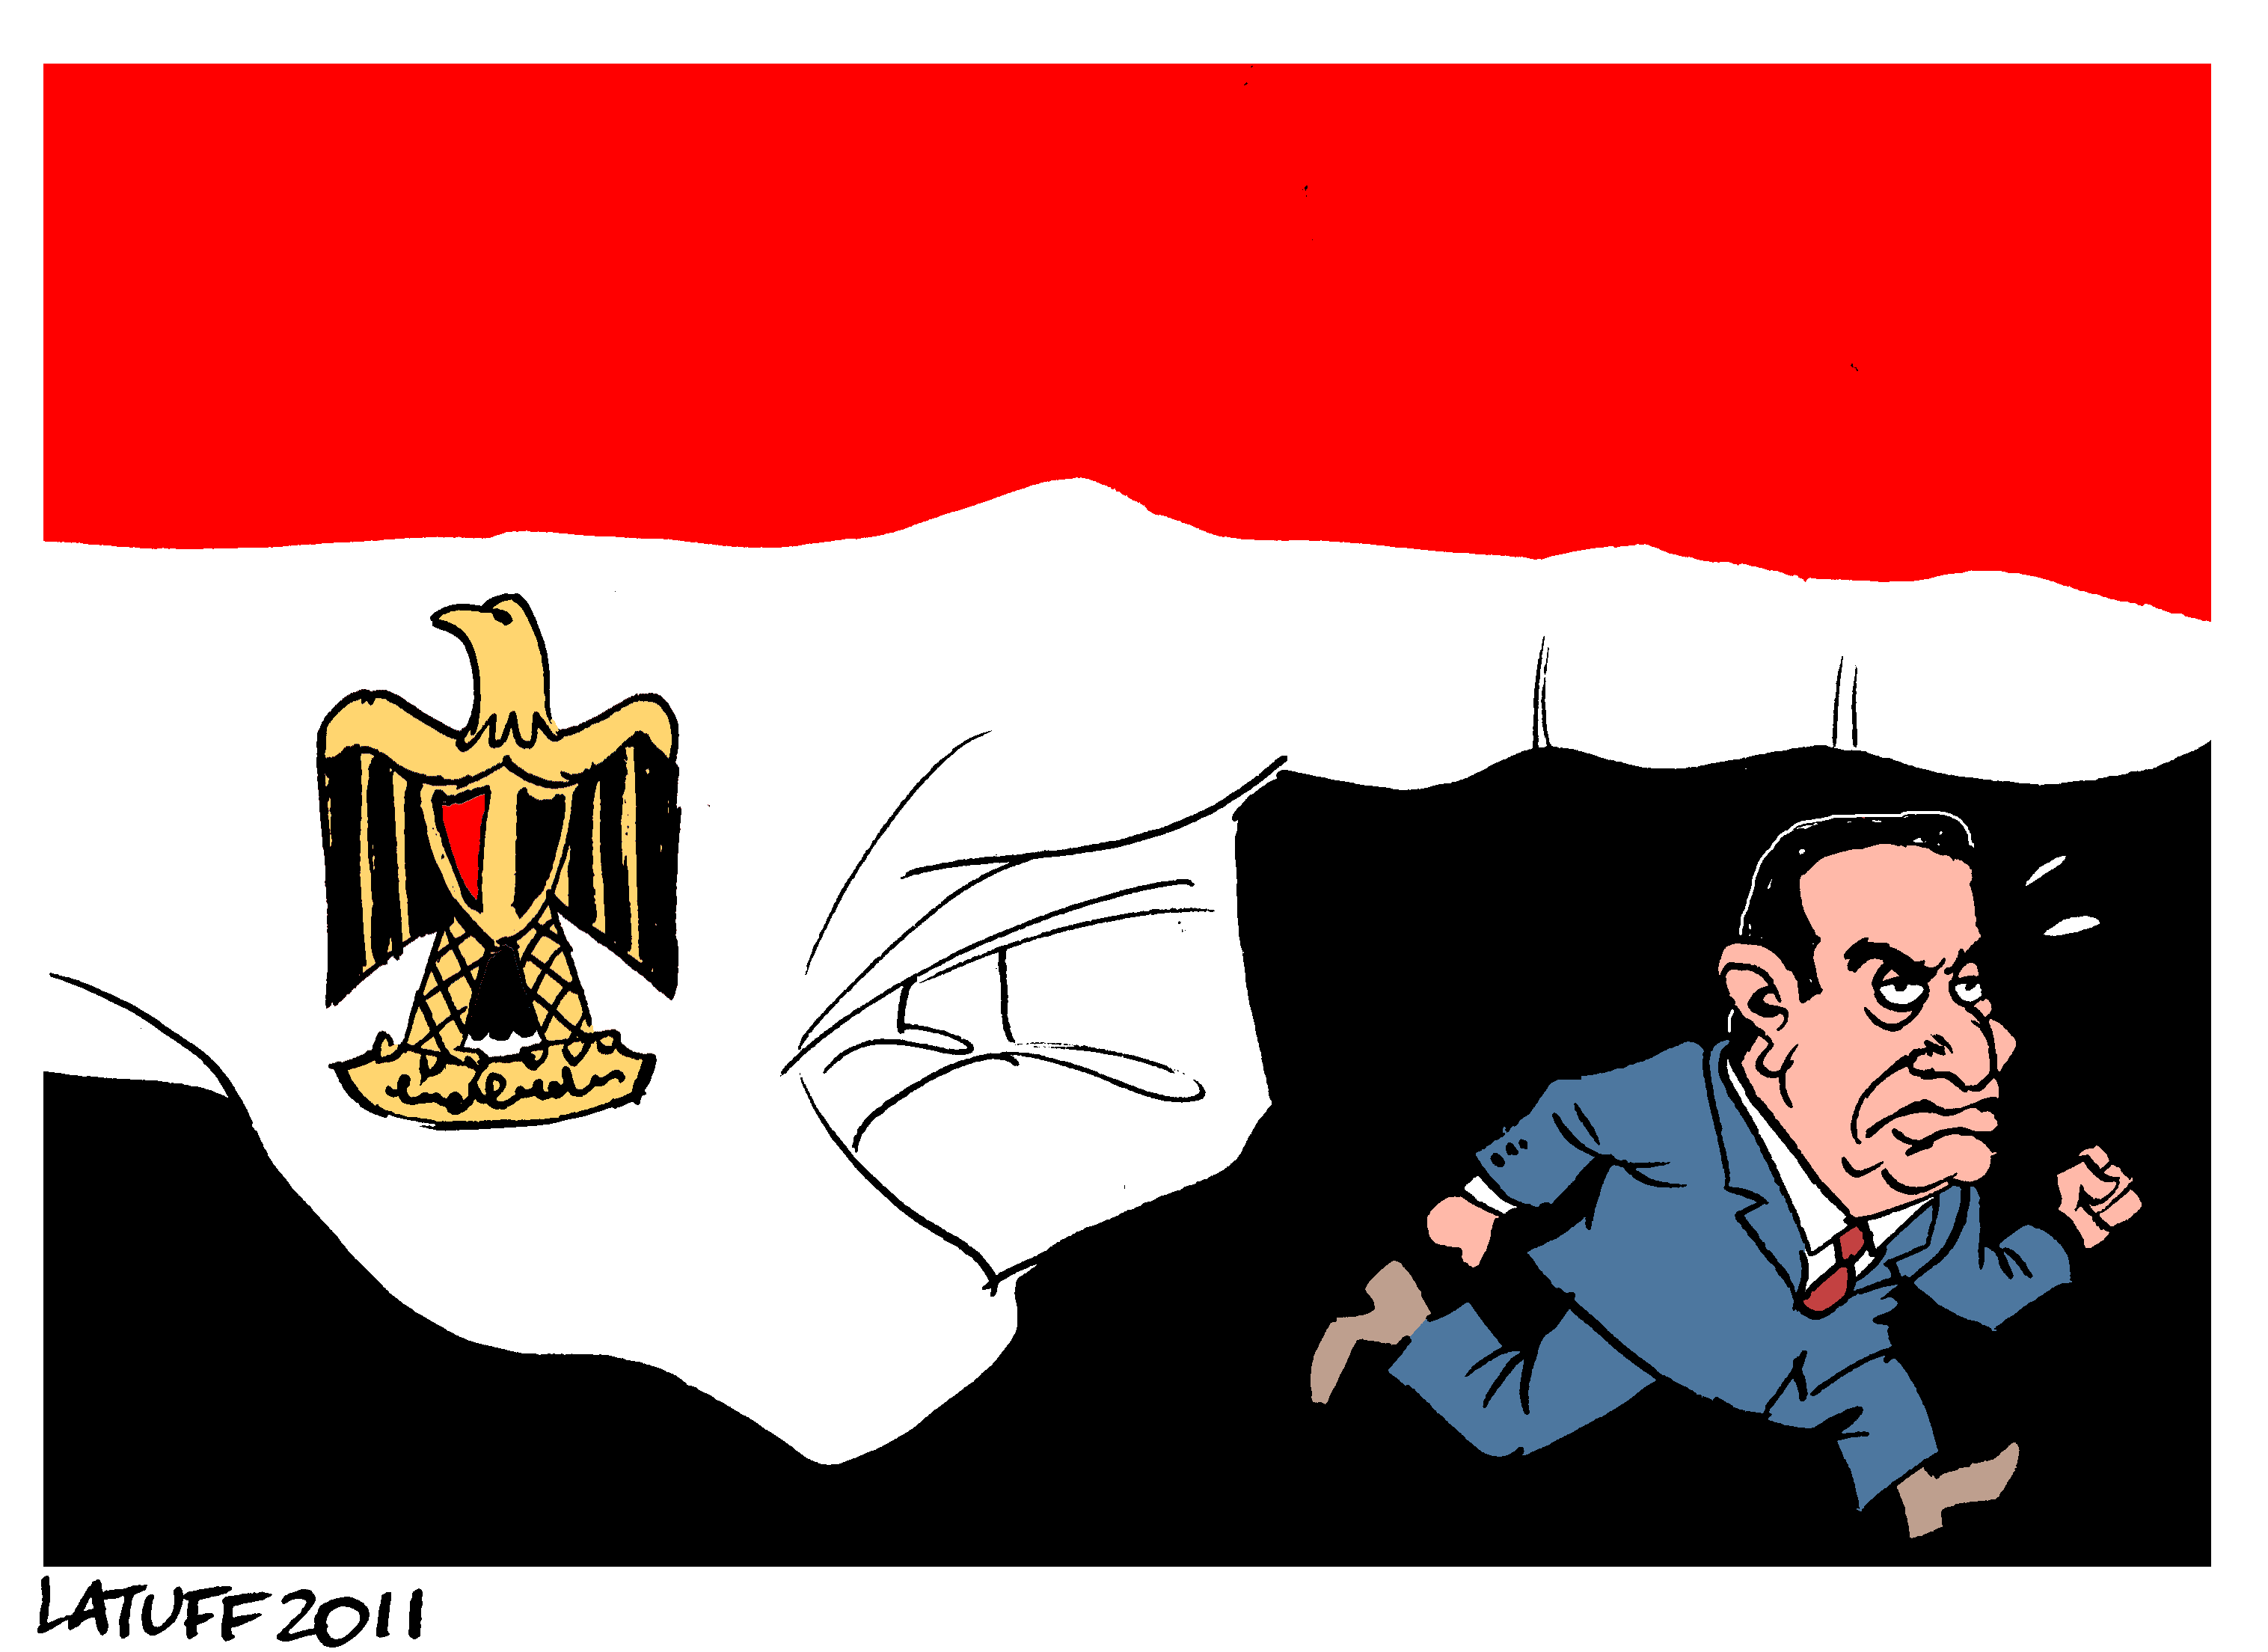 Mubarak Out!